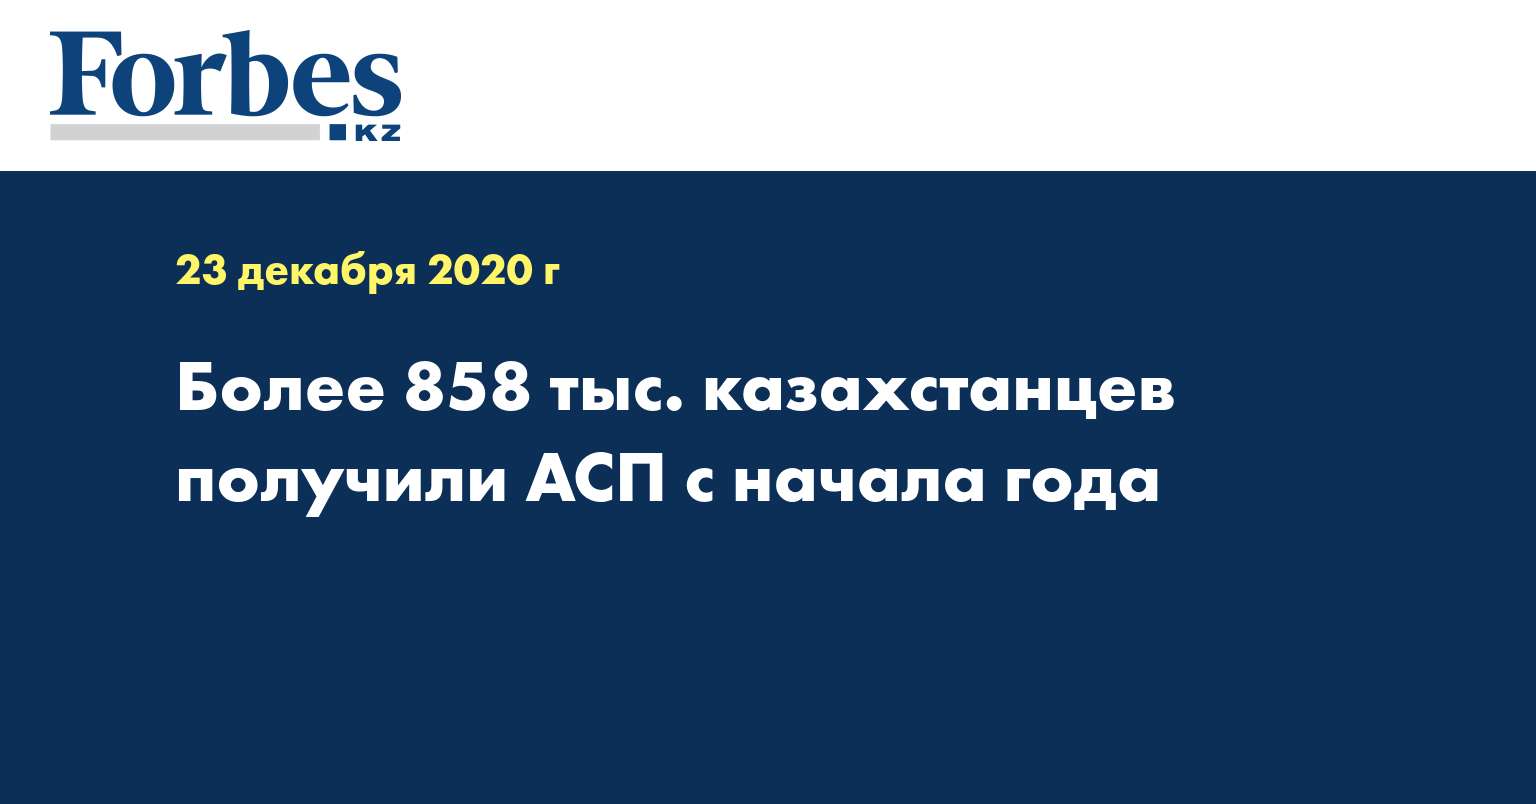 Более 858 тыс. казахстанцев получили АСП с начала года